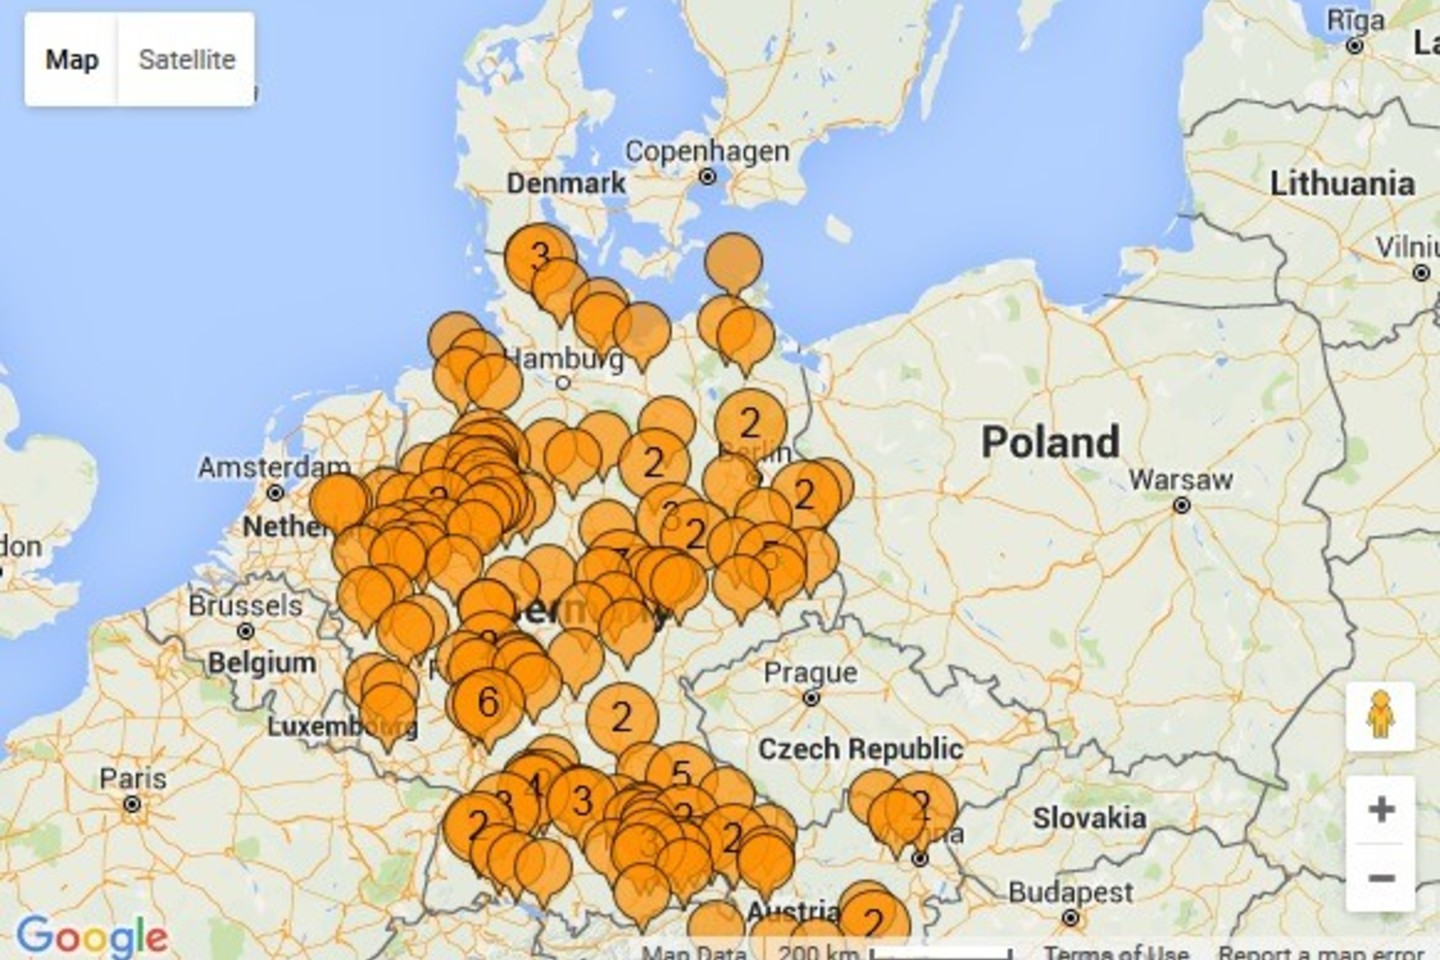 Vokietės sukurtas žemėlapis padeda atrinkti melagingus gandus apie pabėgėlius.<br>„Hoax Map“ nuotr.